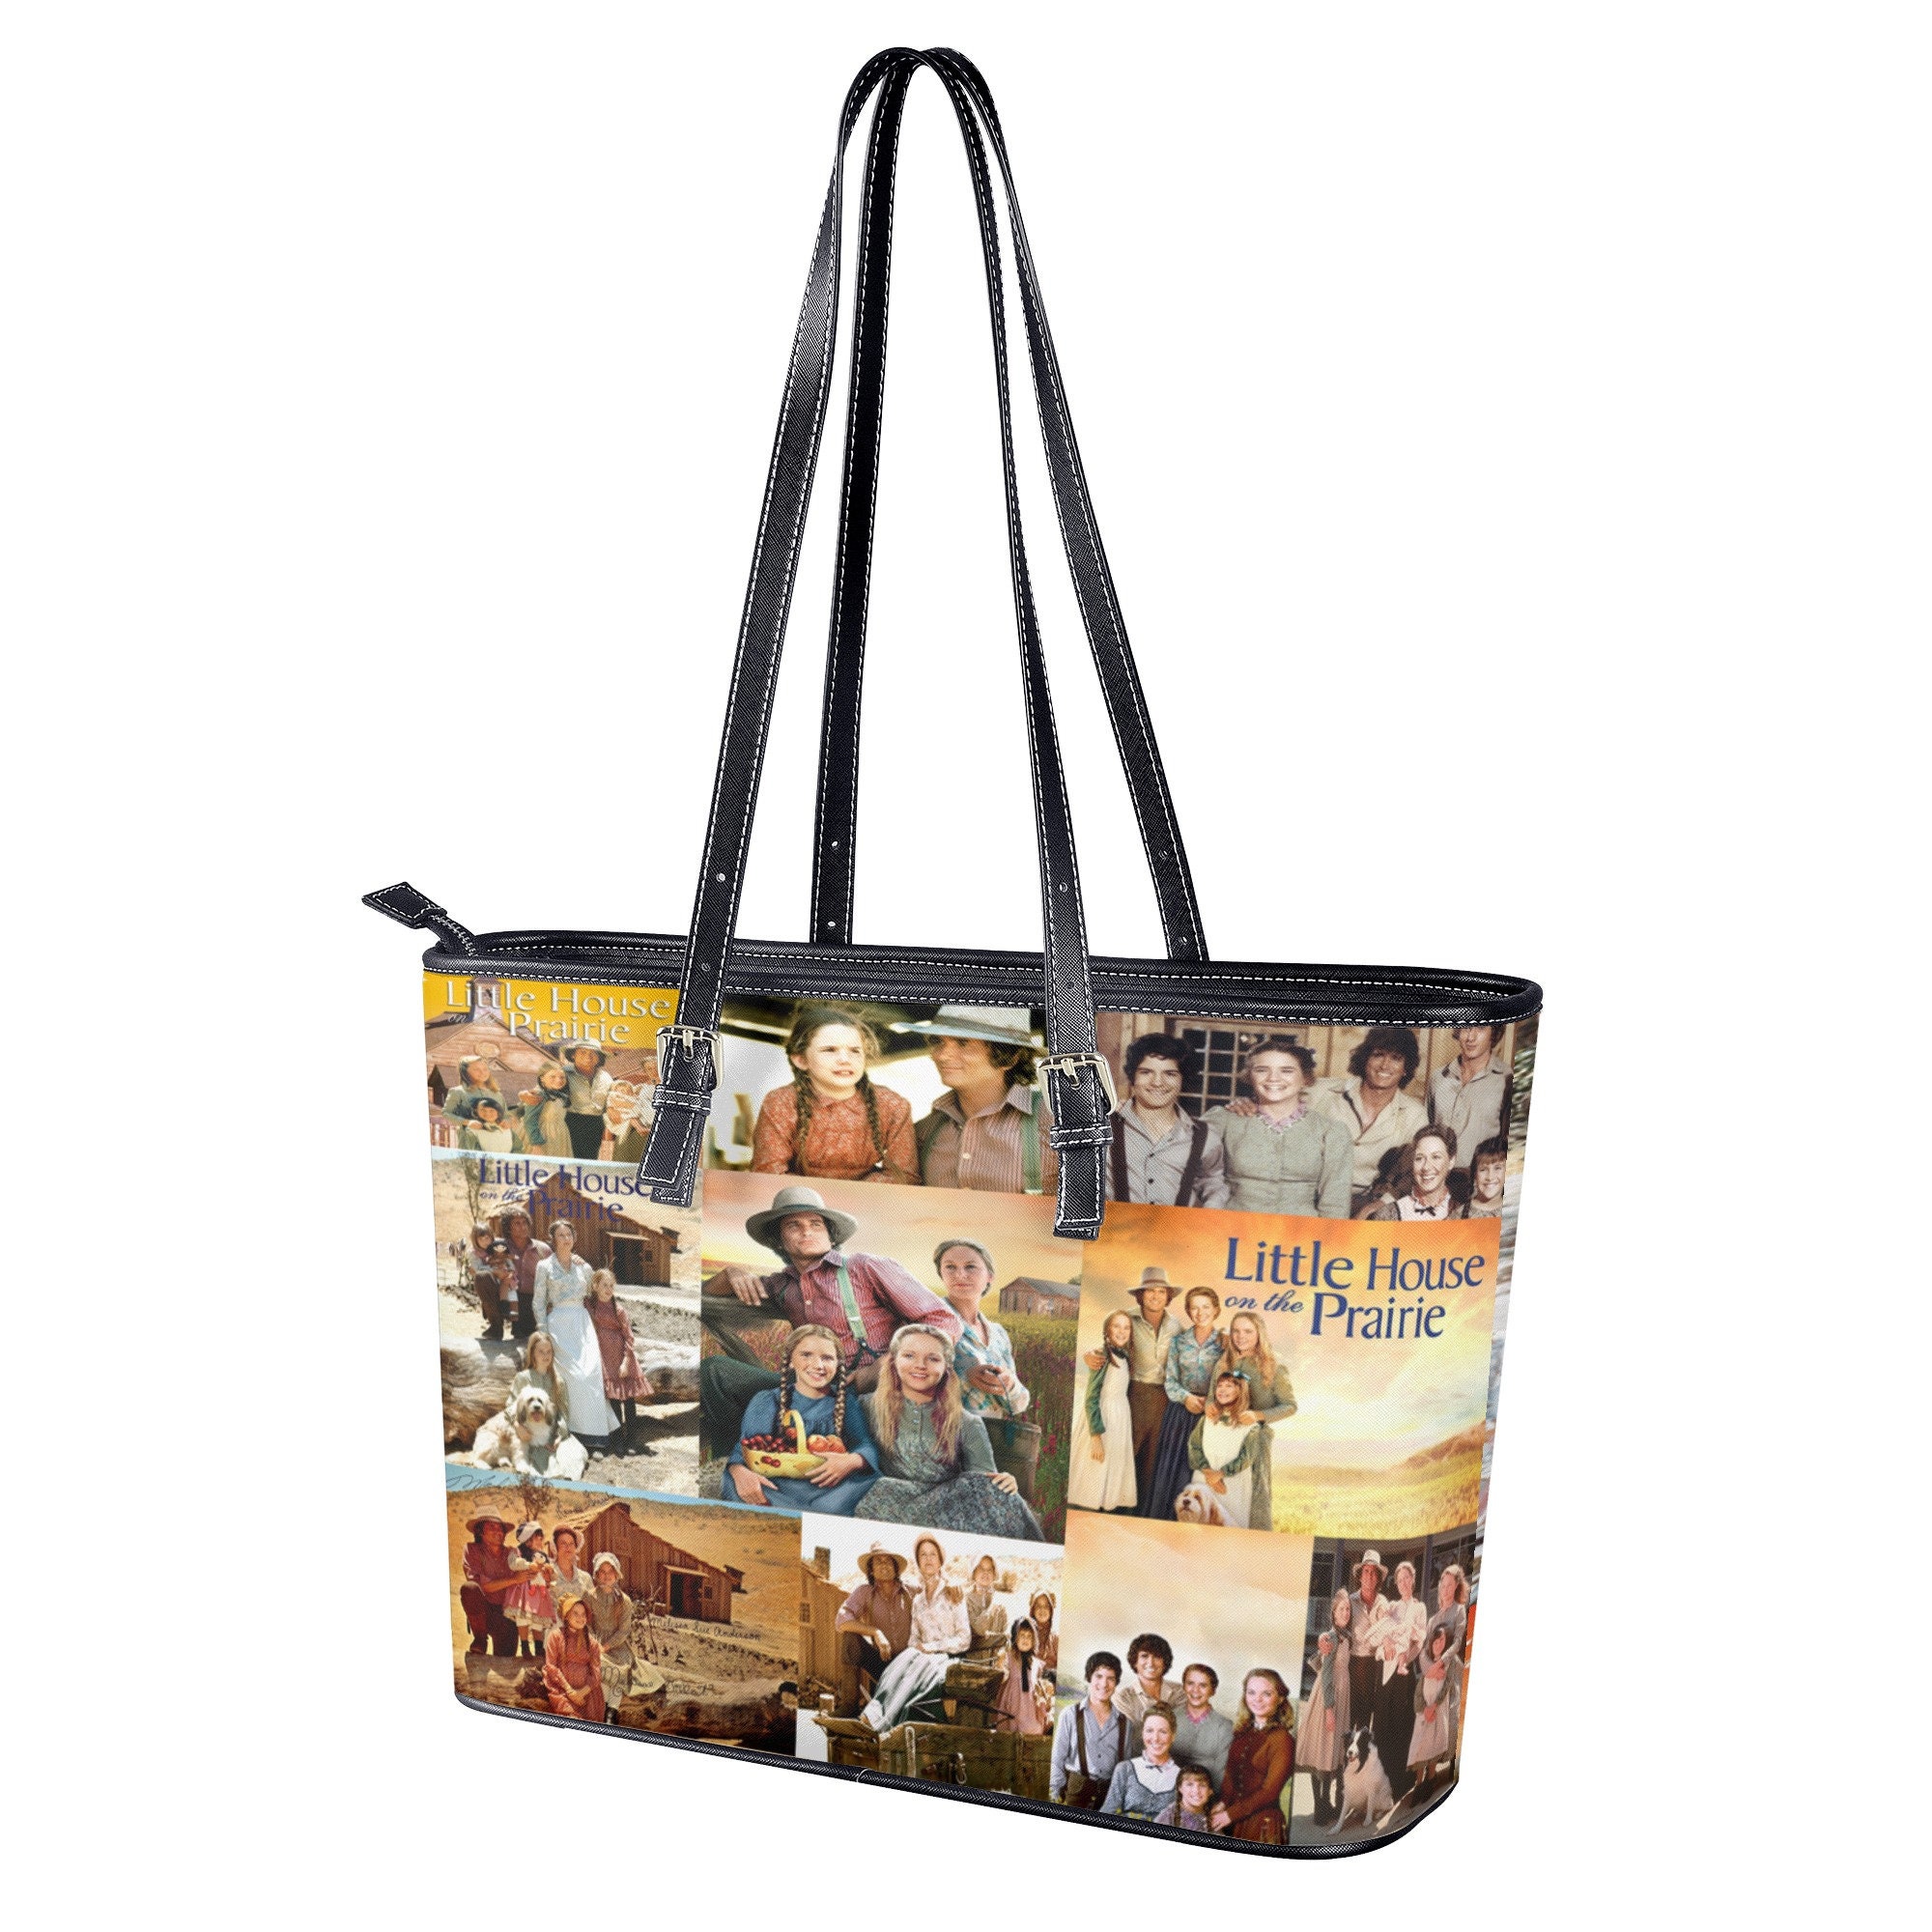 Little House Women Leather Handbag, Travel handbag, Gift for fan